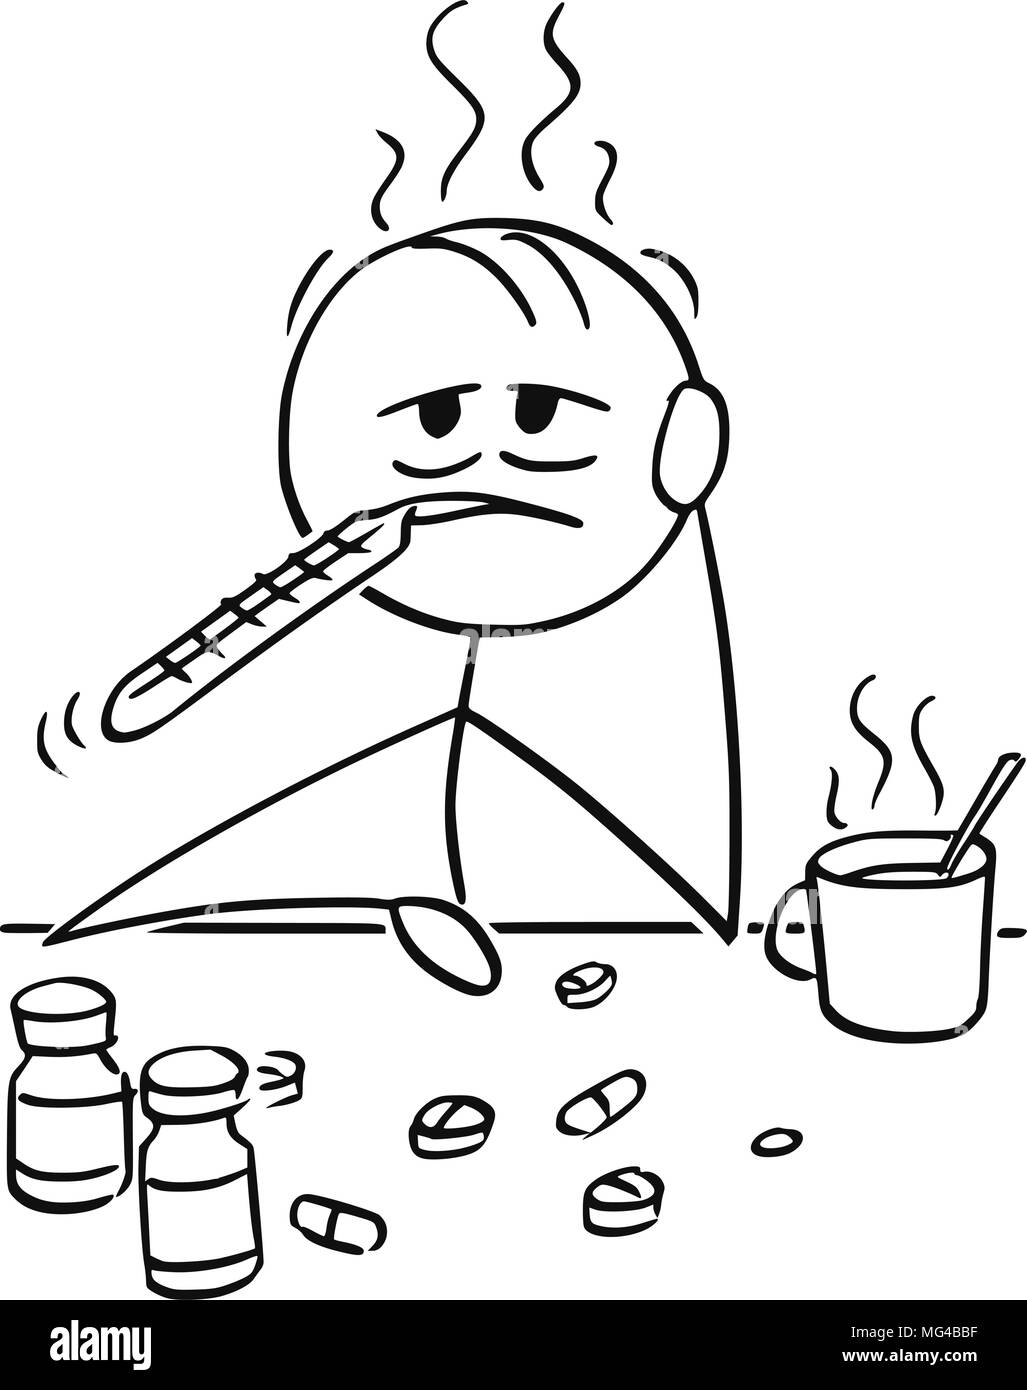 Cartoon di uomo o imprenditore malato di influenza o freddo cercando di curare se stessi dal termometro, tè caldo e pillole o compresse Illustrazione Vettoriale